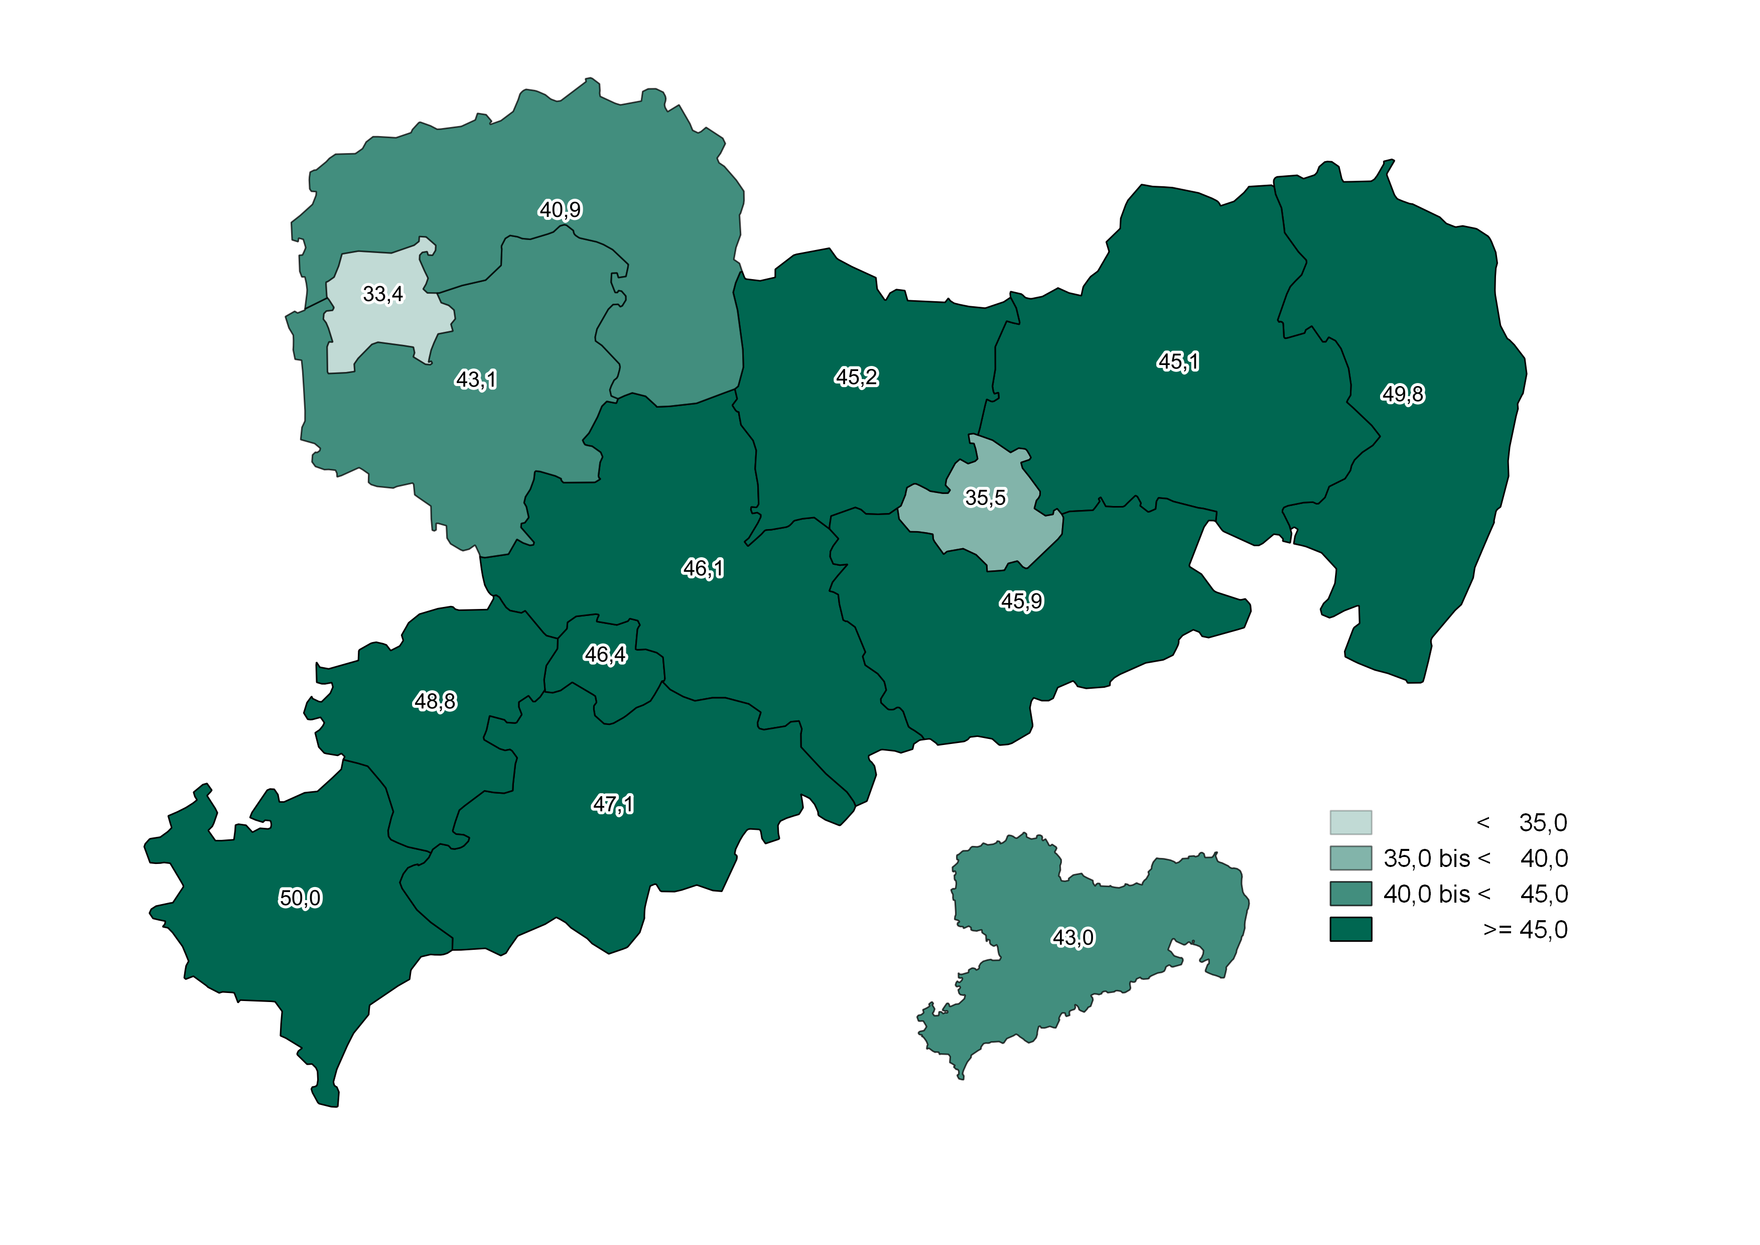 Die Abbildung zeigt die beschriebenen Unterschiede des Altenquotienten zwischen den Landkreisen und kreisfreien Städten.